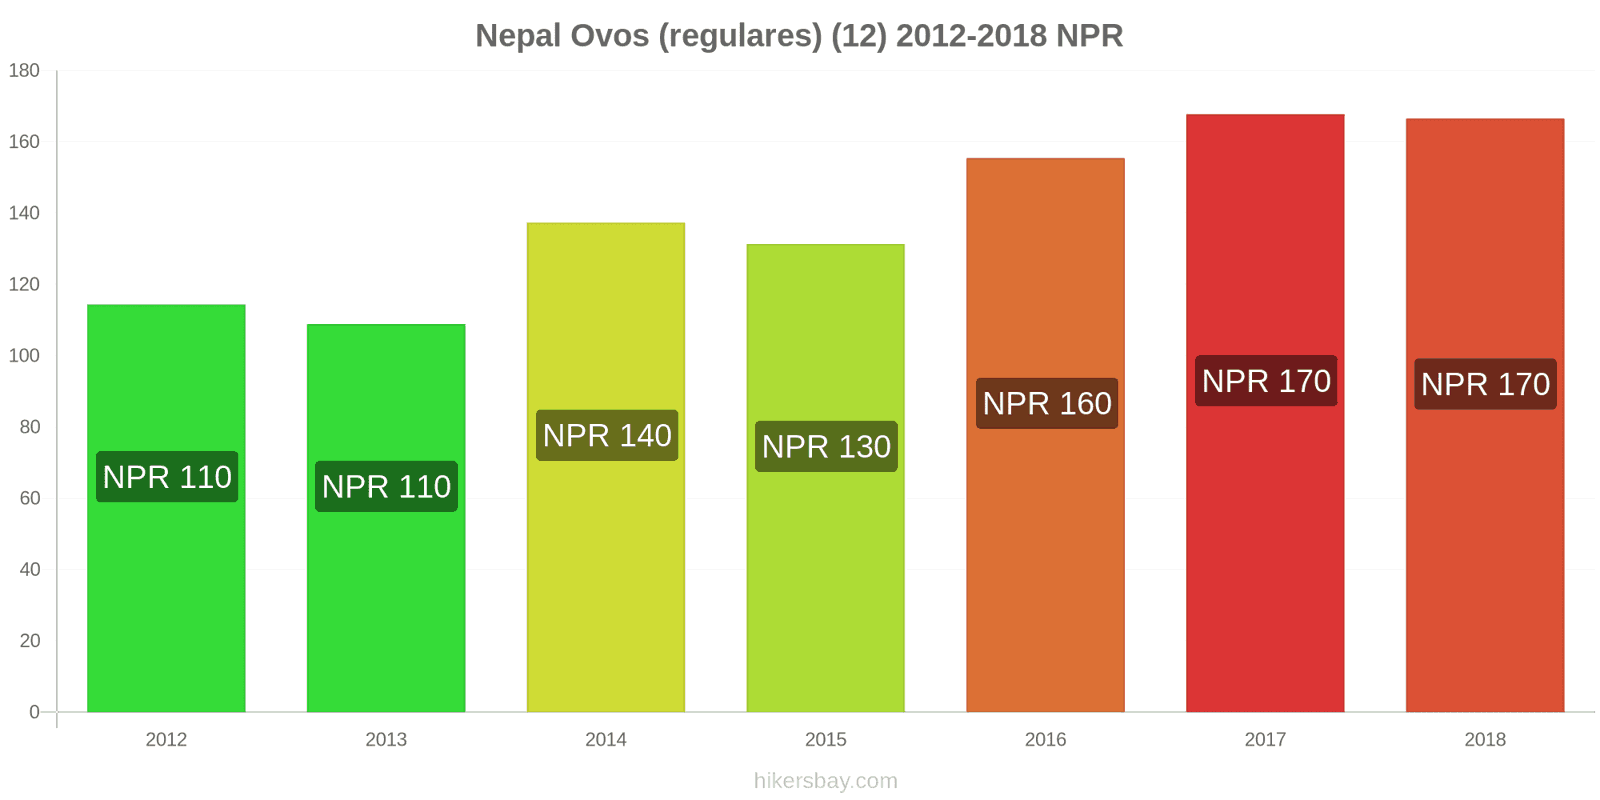 Nepal mudanças de preços Ovos (normais) (12 unidades) hikersbay.com